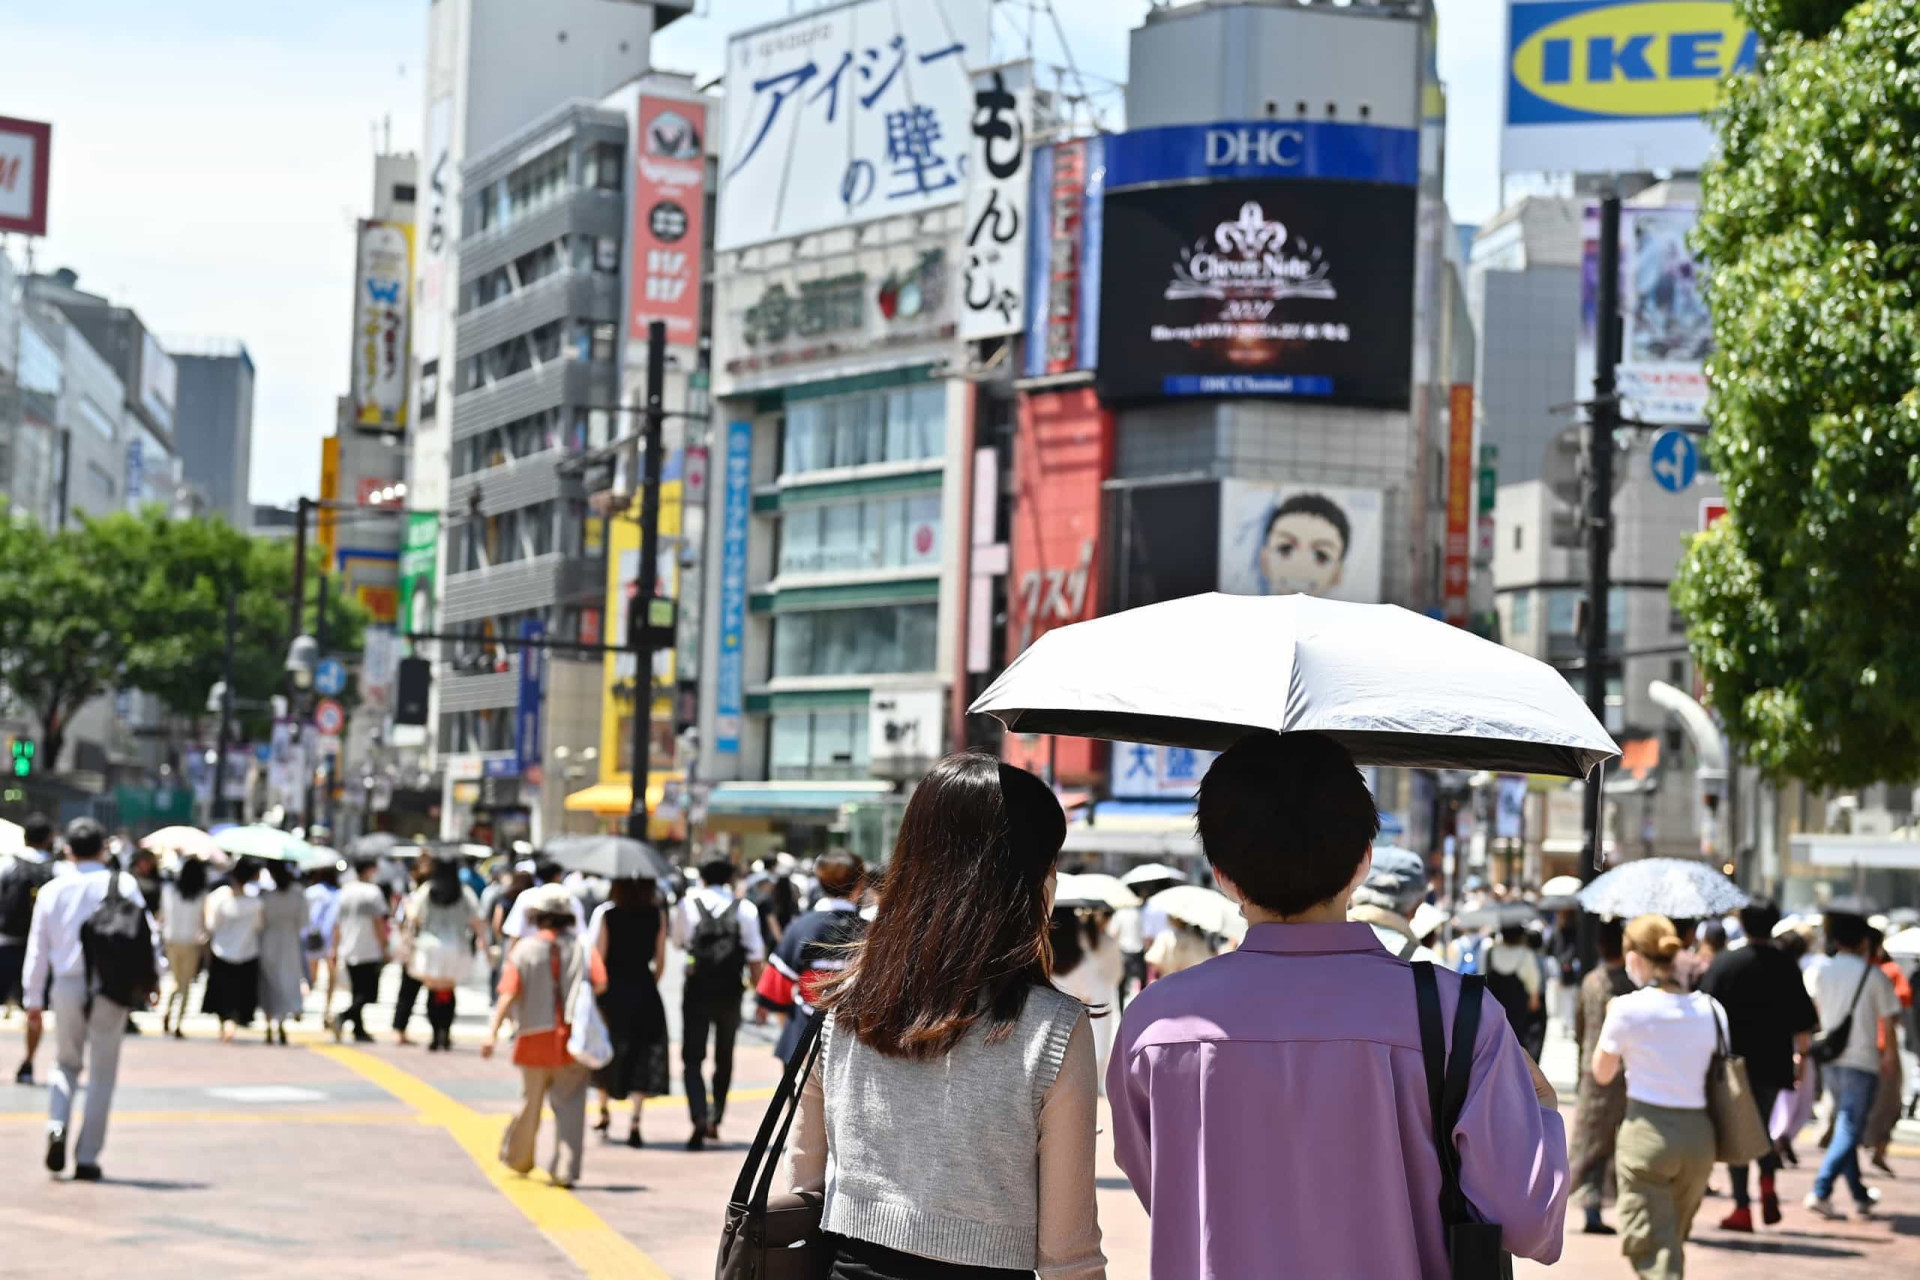 <p>La planète se <a href="https://befr.starsinsider.com/travel/355665/voici-les-endroits-les-plus-chauds-sur-terre" rel="noopener">réchauffe</a> à vive allure et chaque été le mercure s'affole. Le Japon connaît la pire vague de chaleur à ce jour, puisque la température dans le centre de Tokyo a dépassé 35°C le 3 juillet pour un neuvième jour consécutif, soit un jour de plus que le précédent record établi en 2015. Dans le même temps, la ville d'Isesaki, au nord-ouest de Tokyo, a enregistré un record de 40,2 °C. La chaleur étouffante a suscité des mises en garde officielles contre une pénurie d'électricité imminente.</p> <p>Juin 2018 a été un mois extrêmement chaud, soumettant l'Europe, l'Asie, l'Afrique et l'Amérique du Nord à des températures jamais vues depuis 140 ans. Les spécialistes expliquent le phénomène par la présence de courants d'air chaud, immobilisés au-dessus des terres par des zones de forte pression atmosphérique et l'absence de couverture nuageuse. Selon l'OMS, le réchauffement de la planète est responsable de ces températures extrêmes et leurs effets sur l'Homme sont indéniables. Depuis quelques années, le taux de mortalité parmi les personnes âgées n'a fait qu'augmenter, tout comme les sécheresses qui détruisent les cultures et la quantité d'algues vertes en mer Baltique, empoisonnant le reste des océans.</p> <p>Cette année encore, le scénario sera très certainement similaire en France. Le pays sera toutefois attentivement surveillé car en 2003, la canicule avait emporté la vie de 15 000 personnes, avec des températures atteignant par endroit les 44°C. Préparez-vous donc à combattre la chaleur en vous renseignant sur les canicules les plus spectaculaires jamais enregistrées, aux quatre coins du globe.</p><p>Tu pourrais aussi aimer:<a href="https://www.starsinsider.com/n/129228?utm_source=msn.com&utm_medium=display&utm_campaign=referral_description&utm_content=375249v3"> 30 infos fascinantes sur le mystère des jumeaux </a></p>